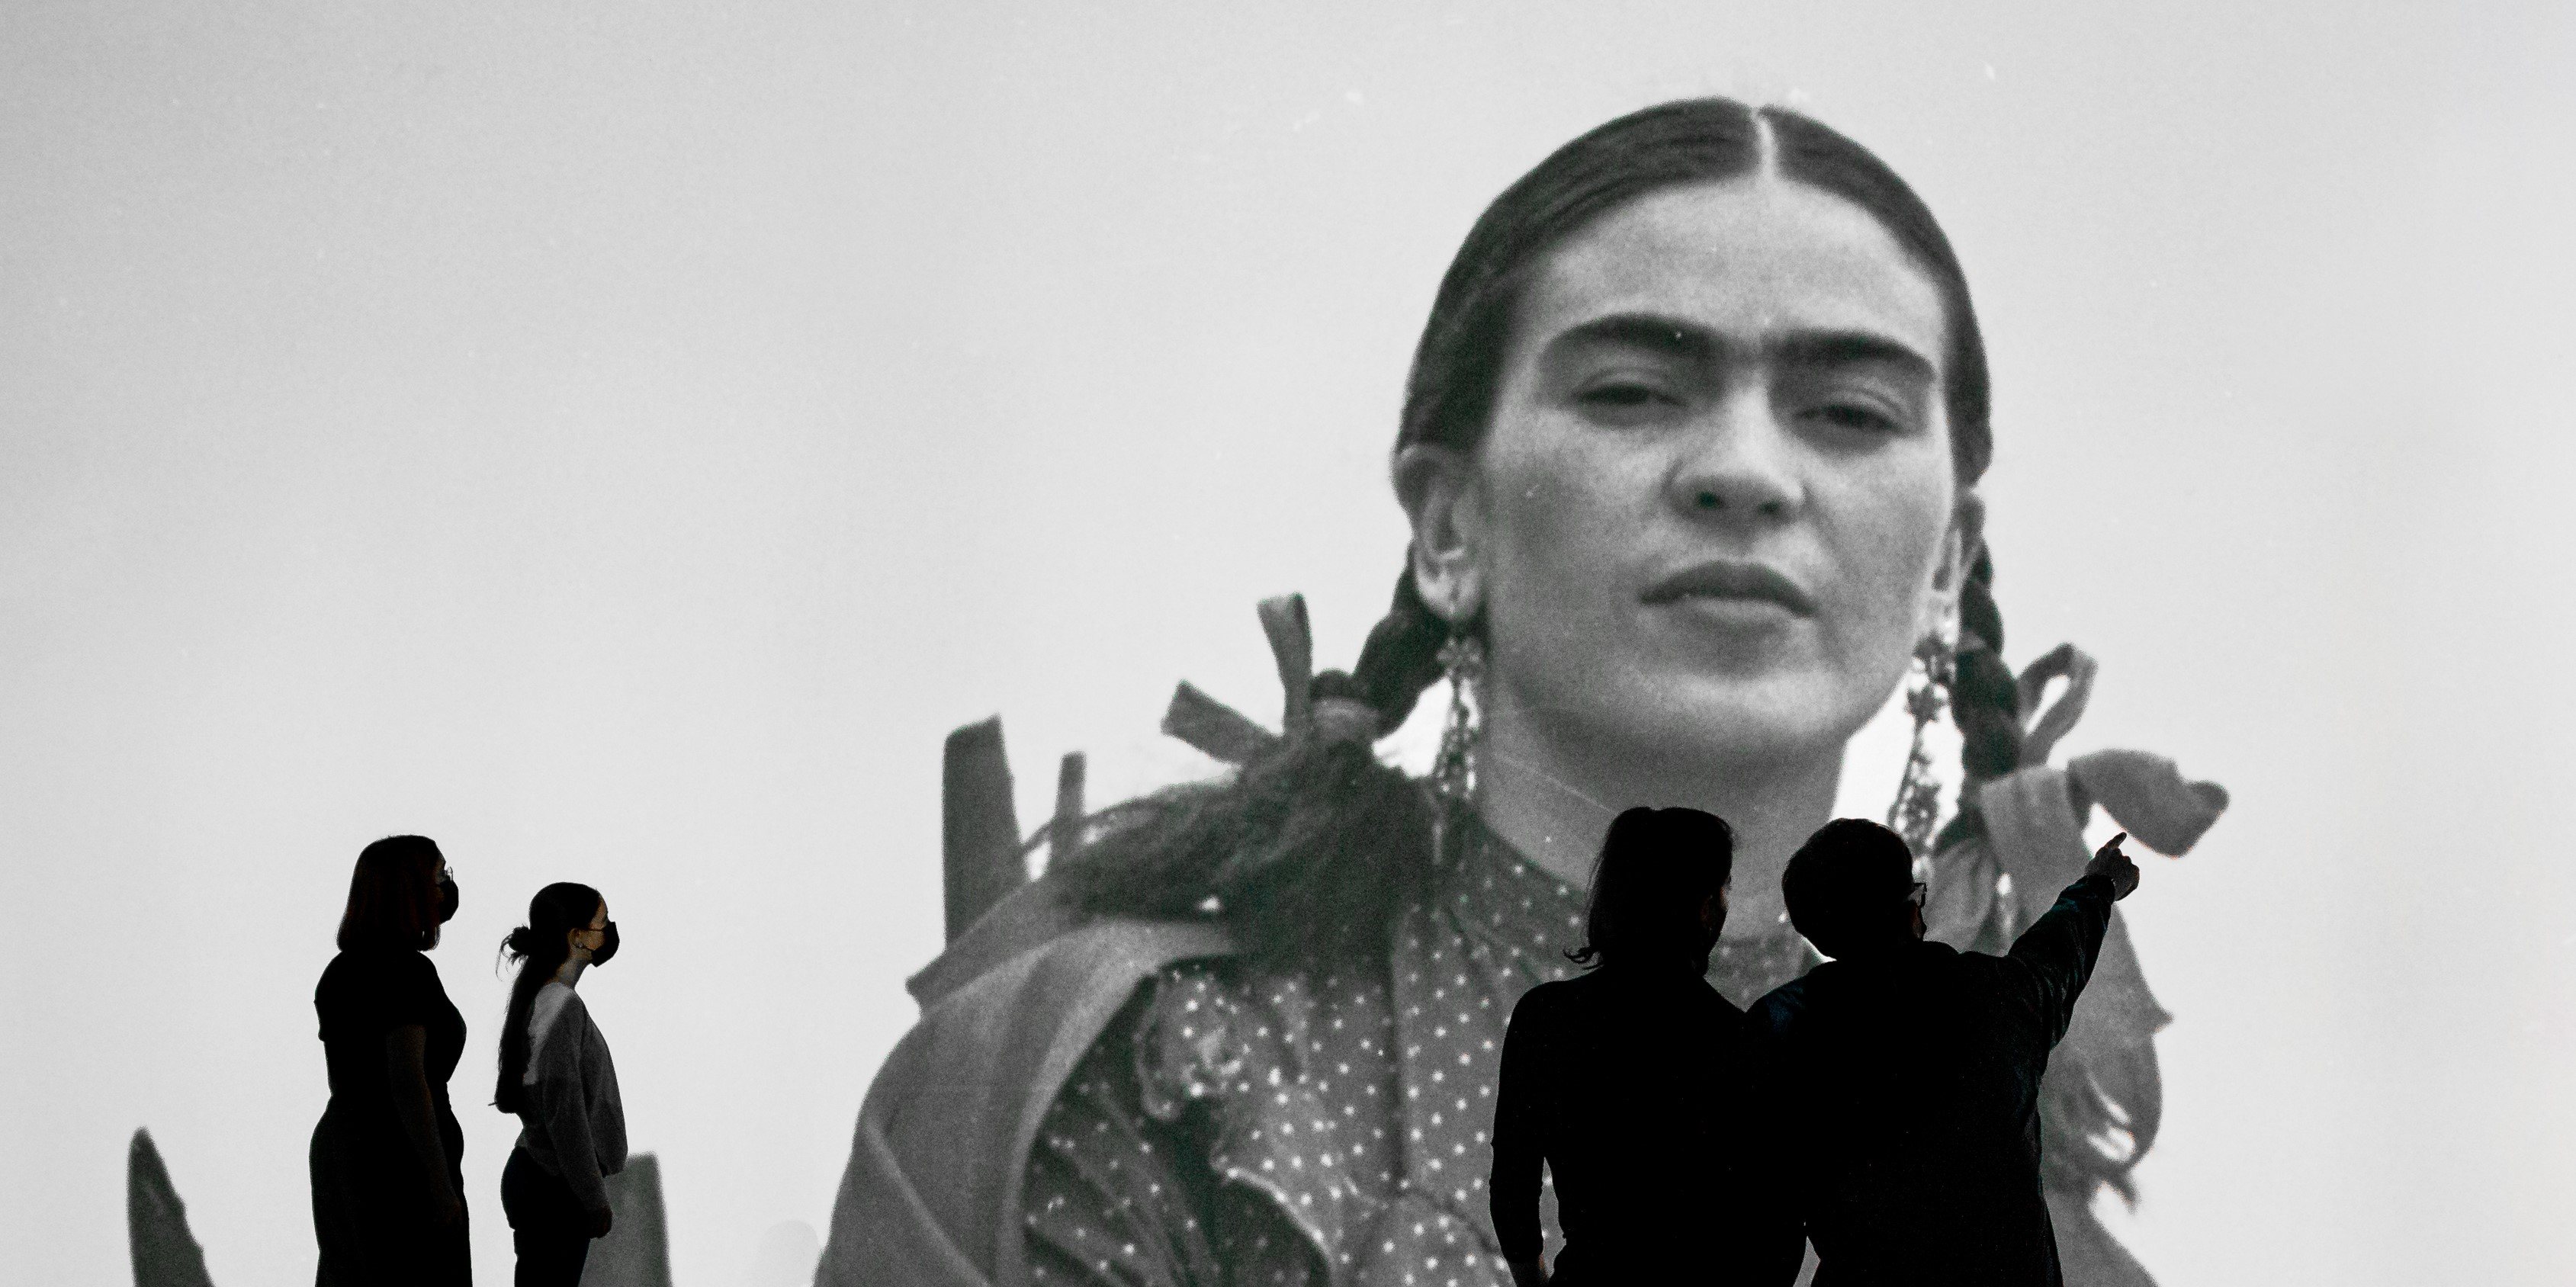 Frida Kahlo Coração em Madeira